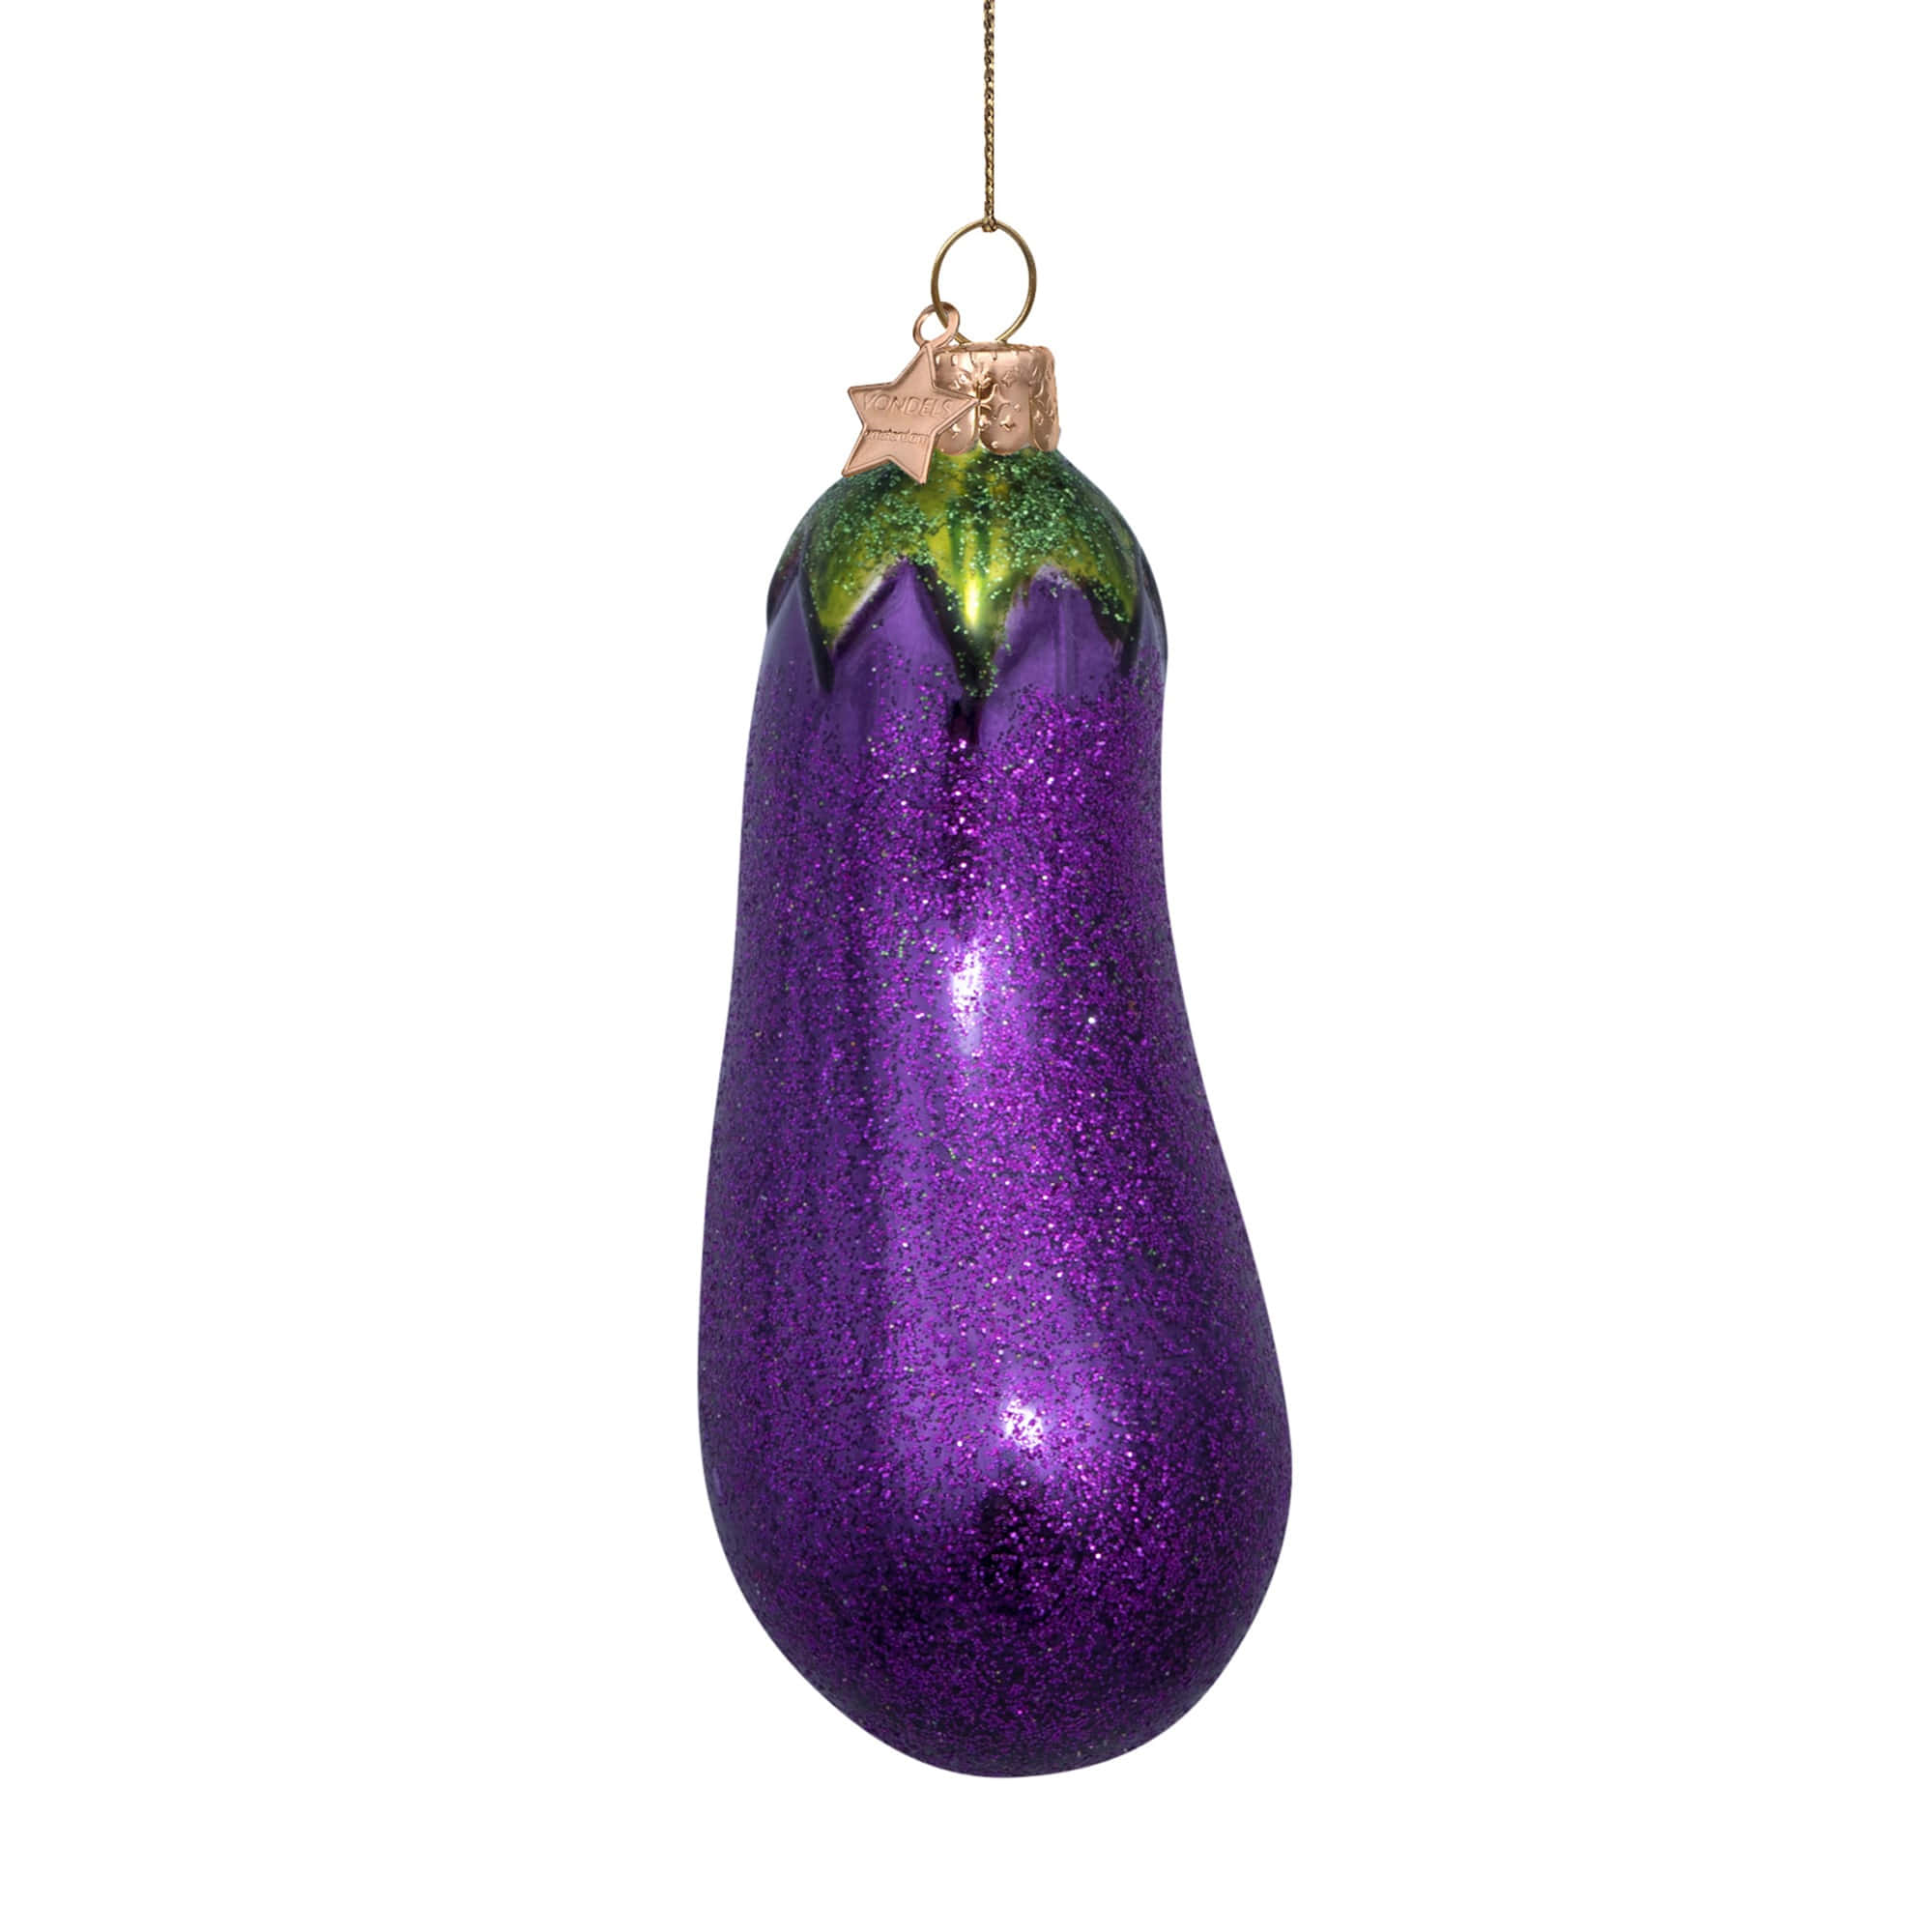 VONDELS Ornament Glass Purple Eggplant